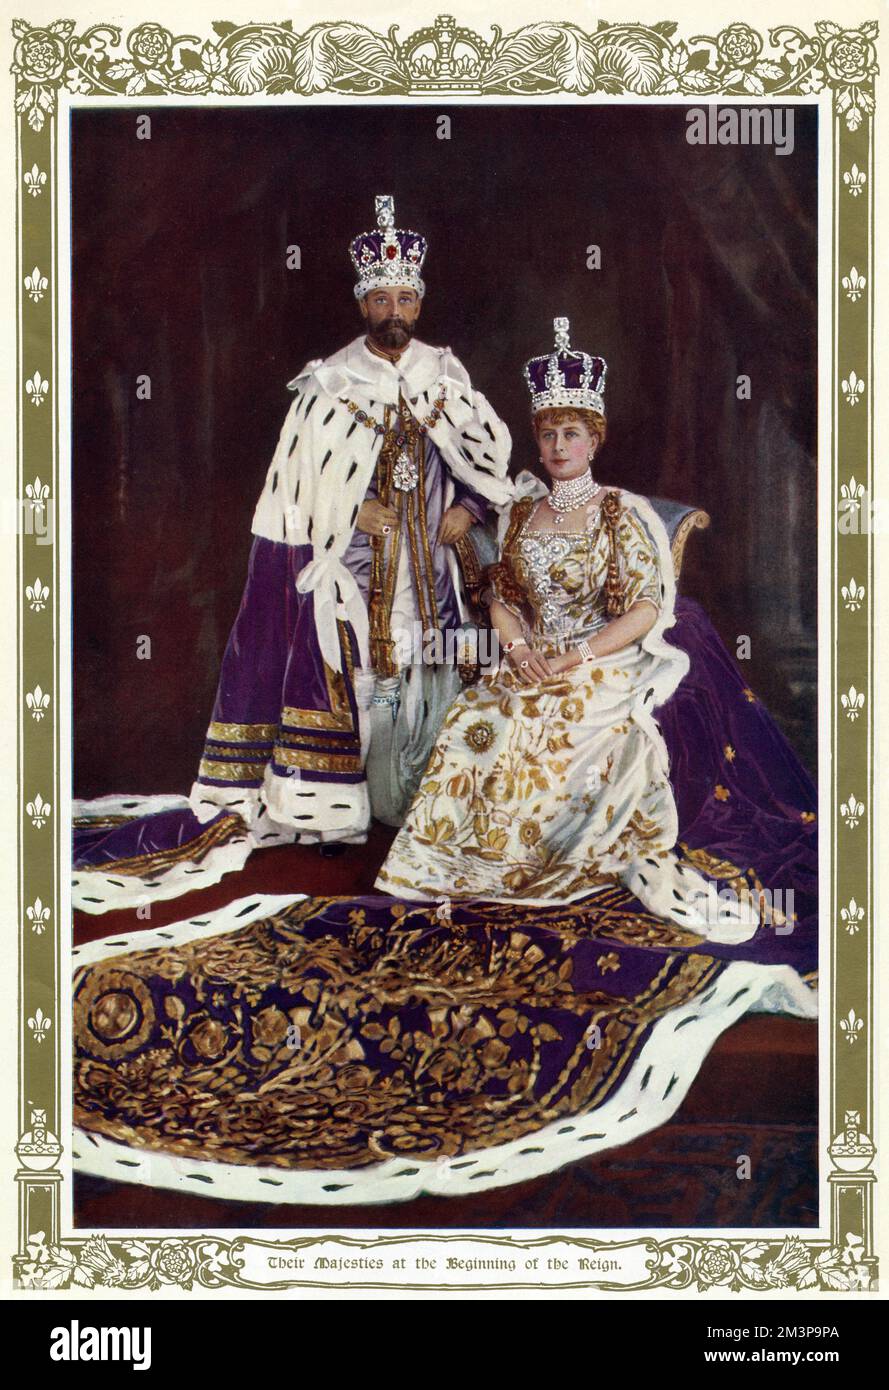 Incoronazione del re Giorgio V e della regina Maria consorte, Giorgio V che indossa la corona imperiale di stato, e Royal Purple Robe of state. Maria consorte indossando la corona di stato di Giorgio V, e l'abito per incoronazione ricamato allegoricamente. 22 giugno 1911 Foto Stock